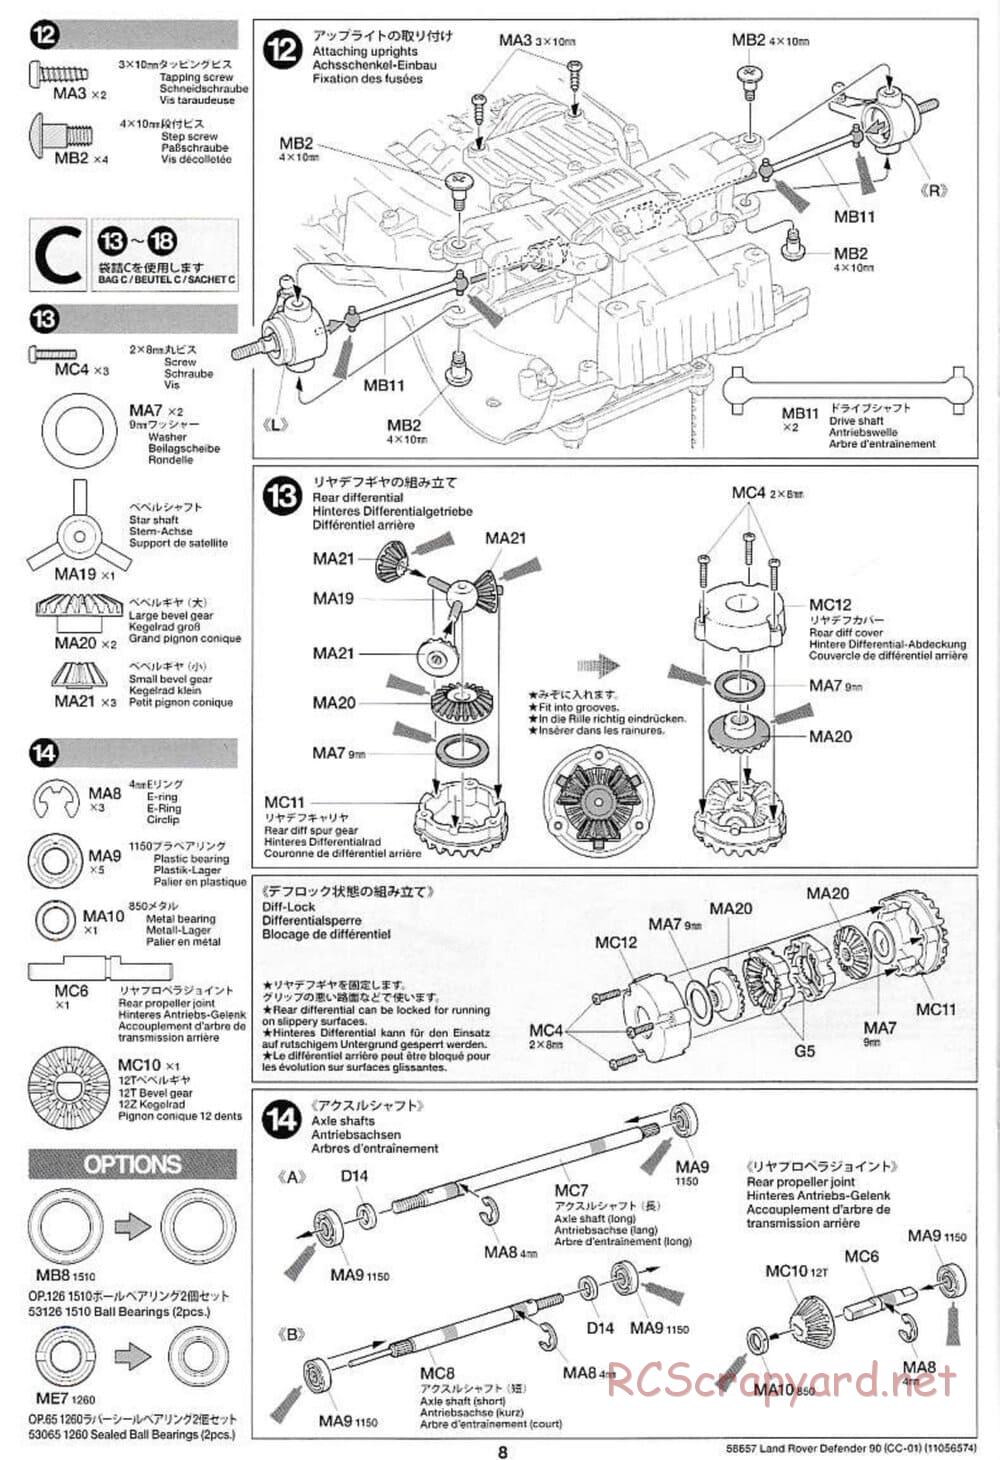 Tamiya - Land Rover Defender 90 - CC-01 Chassis - Manual - Page 8